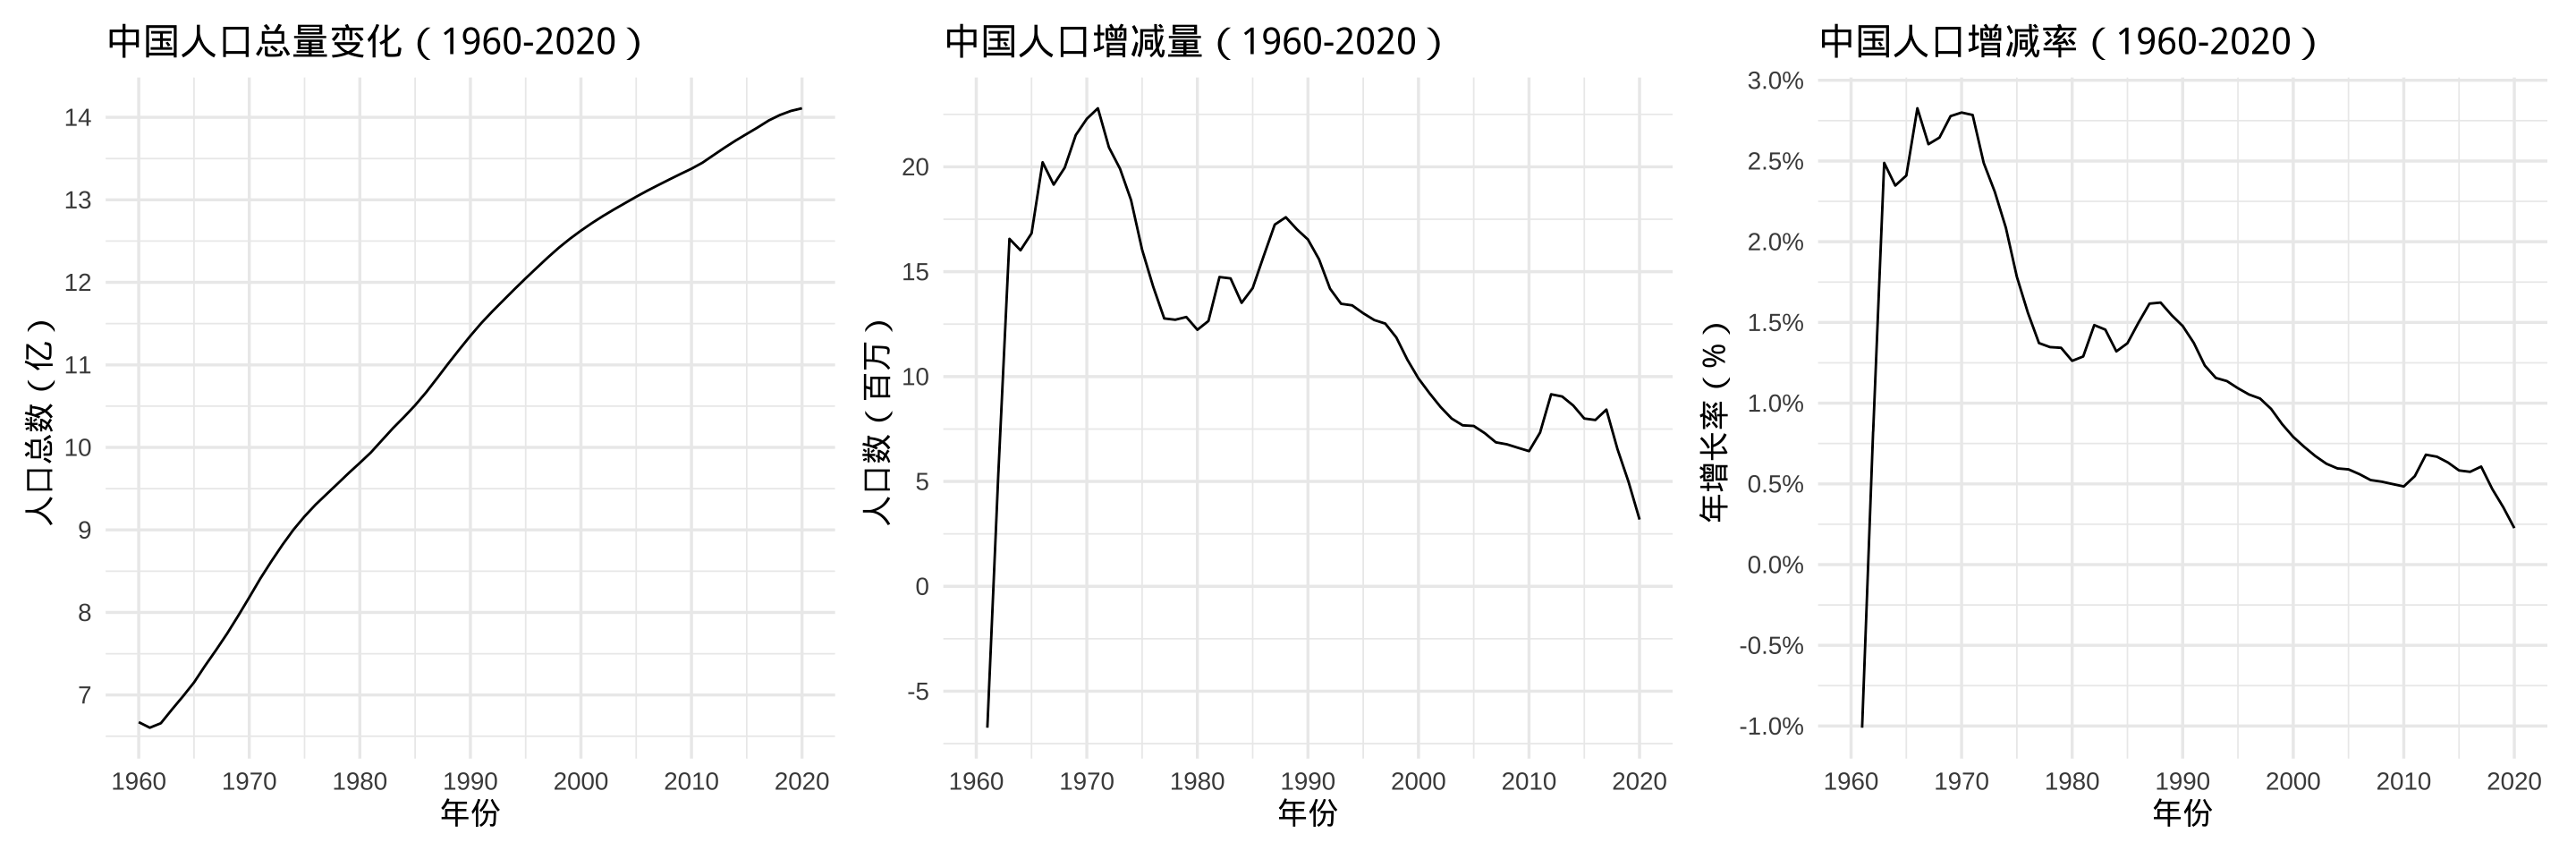 1960-2020 年中国人口总量、变化、变化率